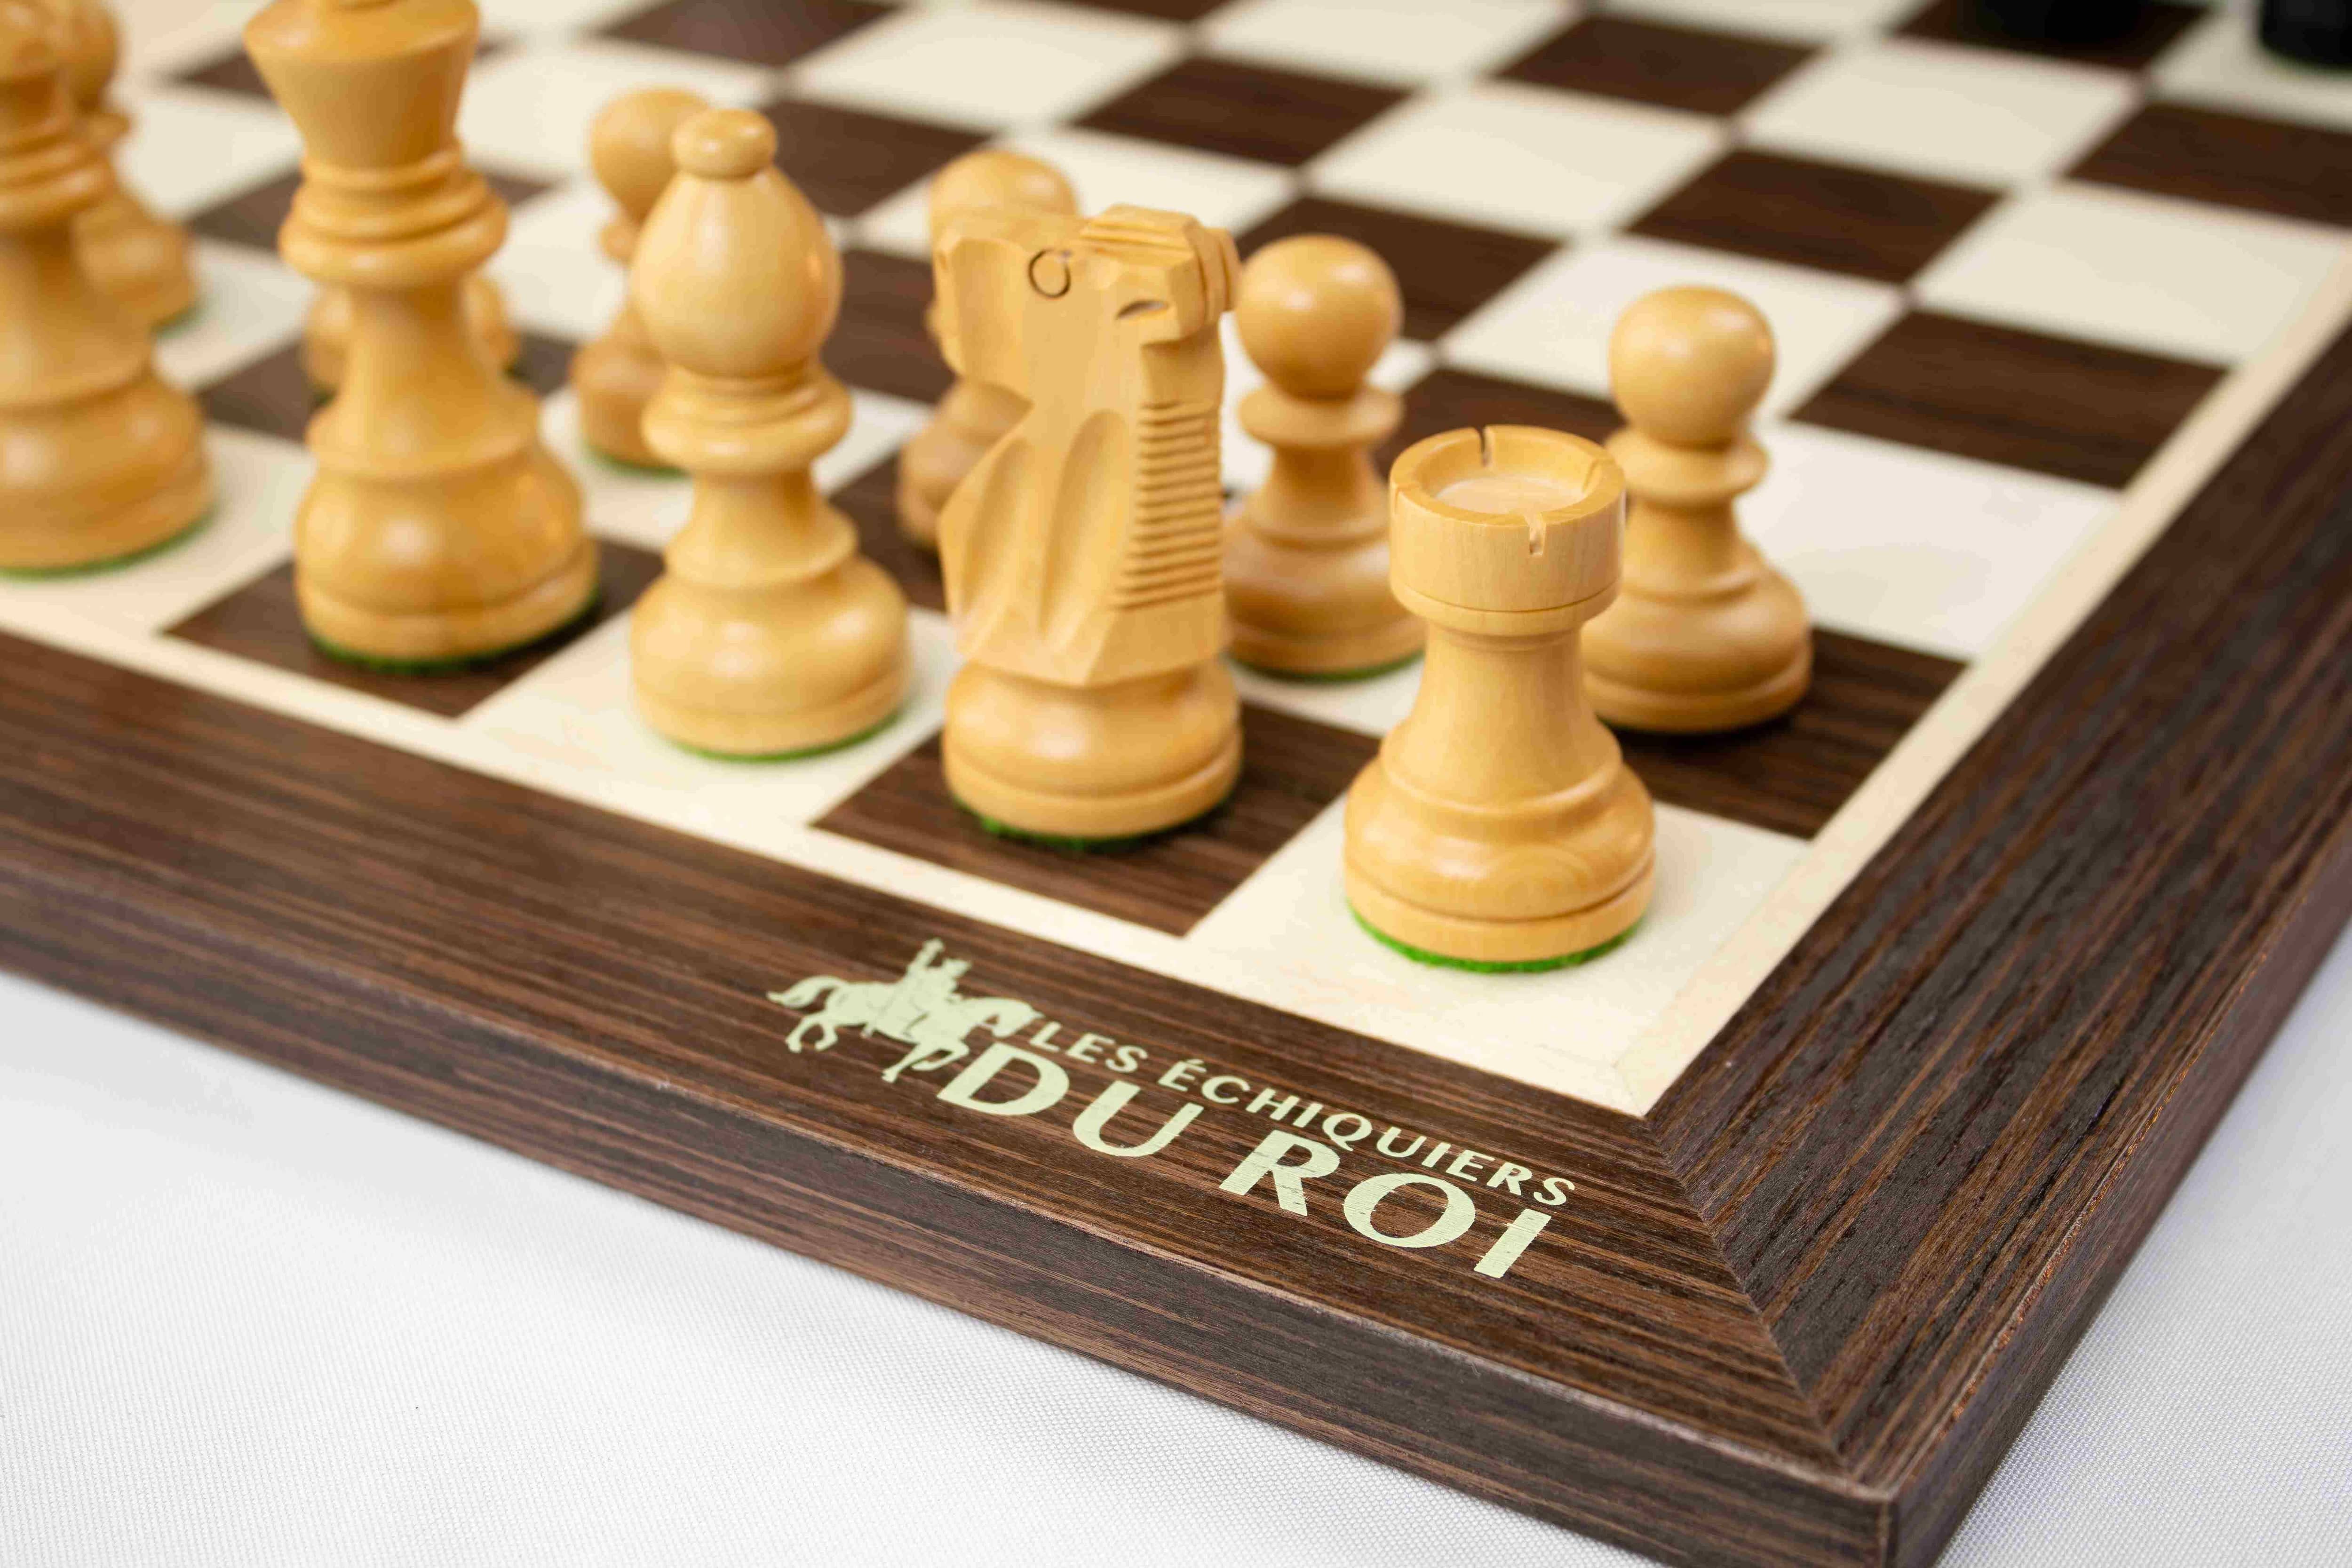 Schach mit Figuren, Nr. 122 aus Holz, Schachspiel 42x42x2,5 cm